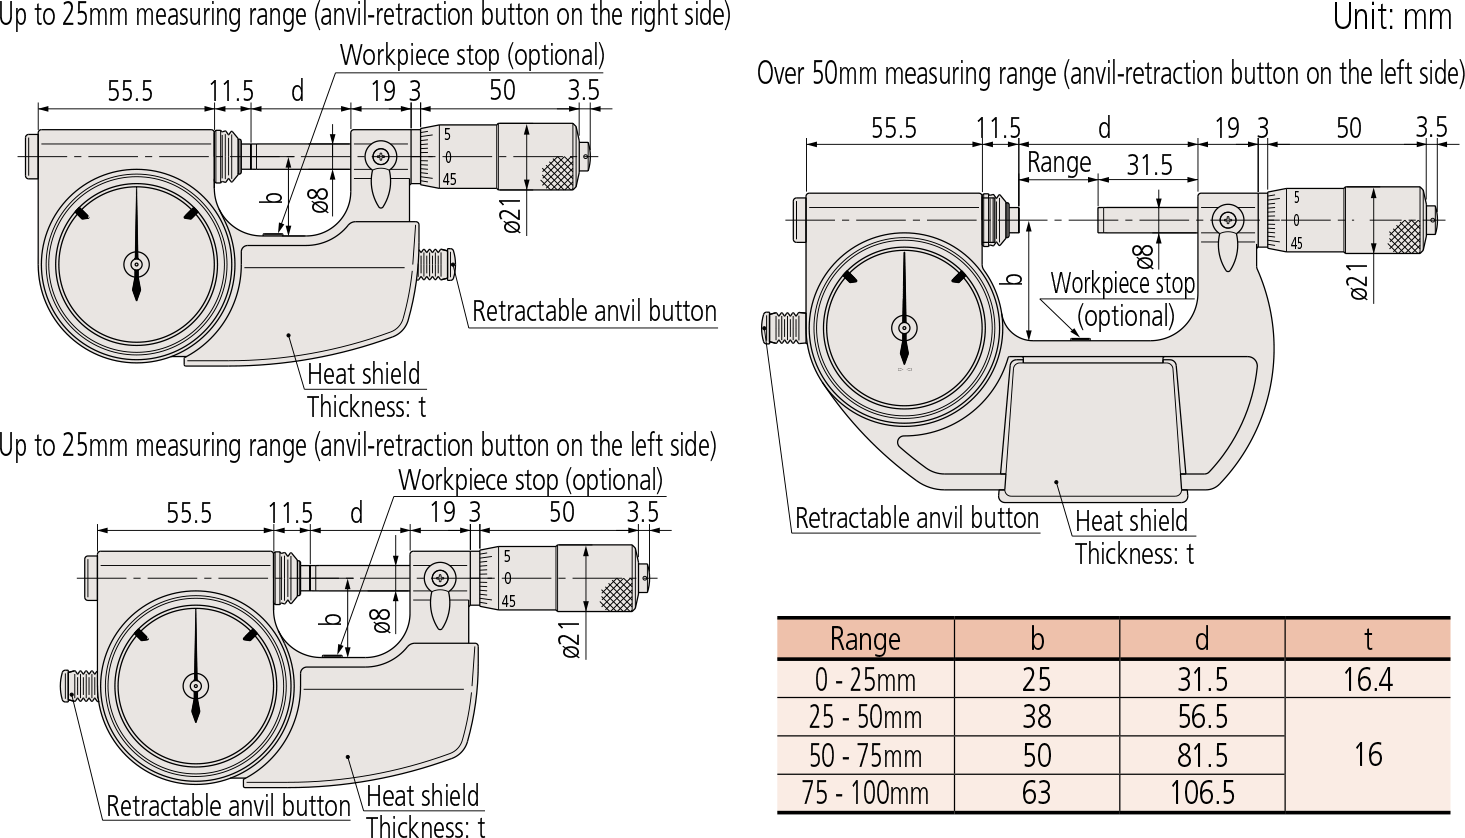 Indicating Micrometers